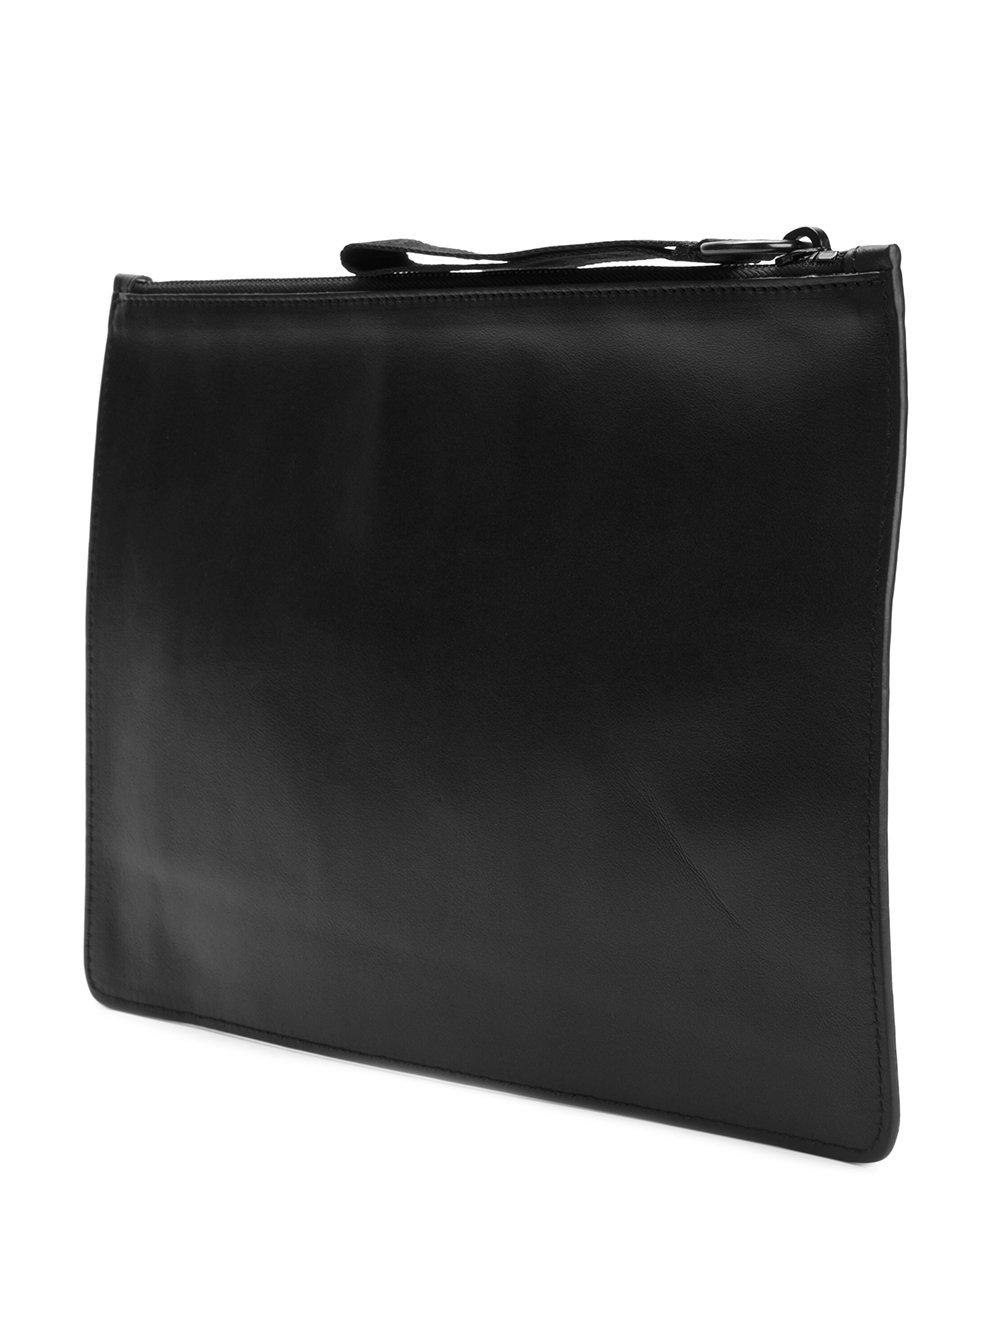 Lyst - Marcelo burlon Logo Bag in Black for Men